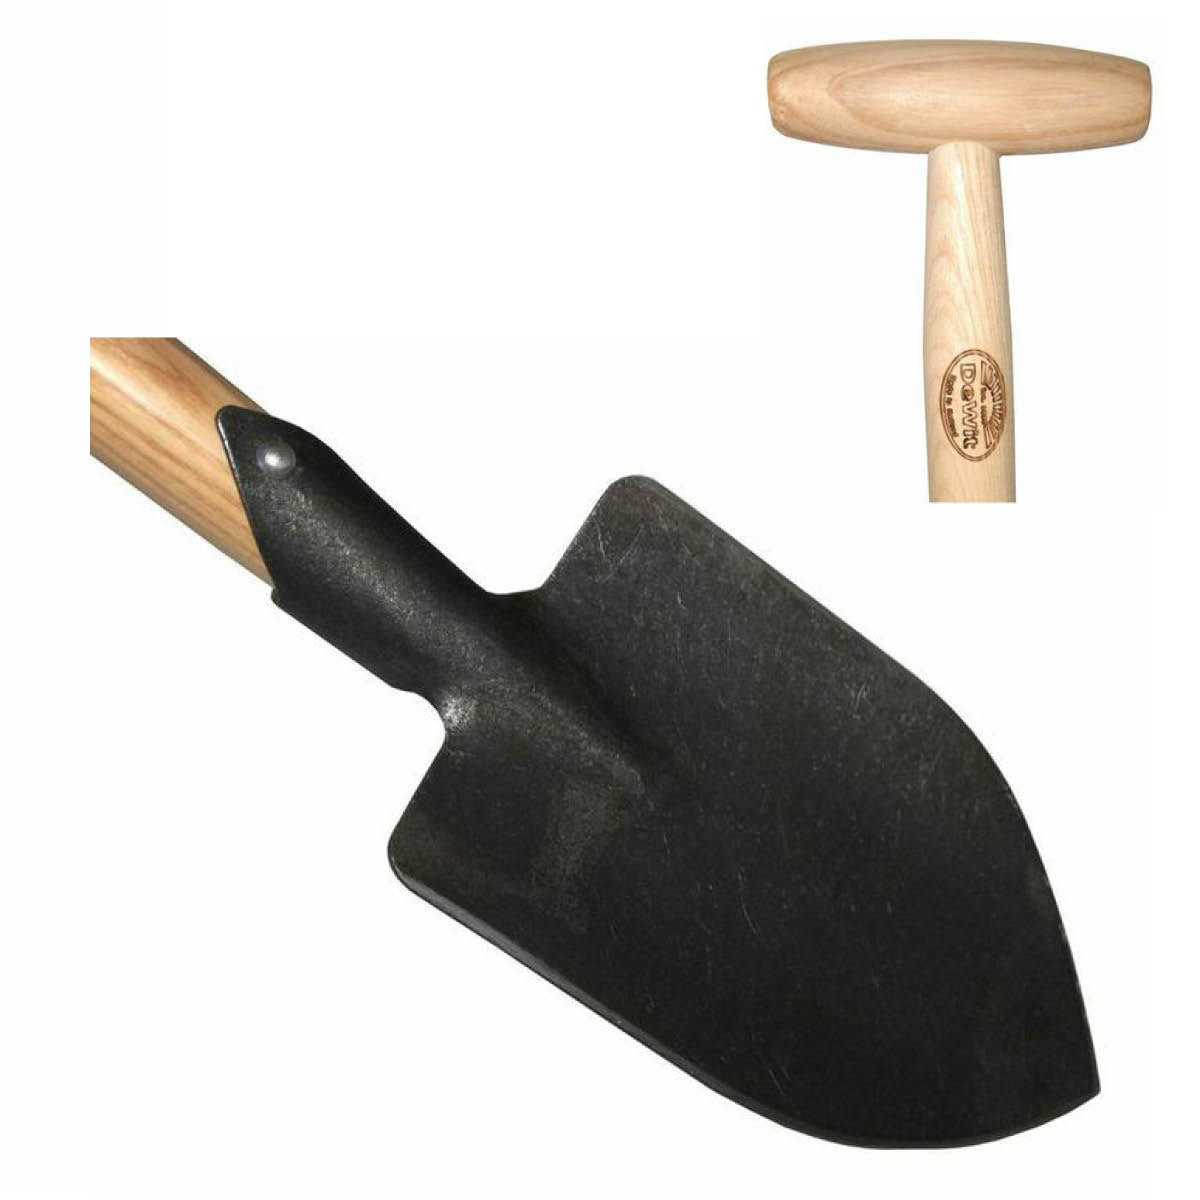 DeWit Junior pointed spade (3172)